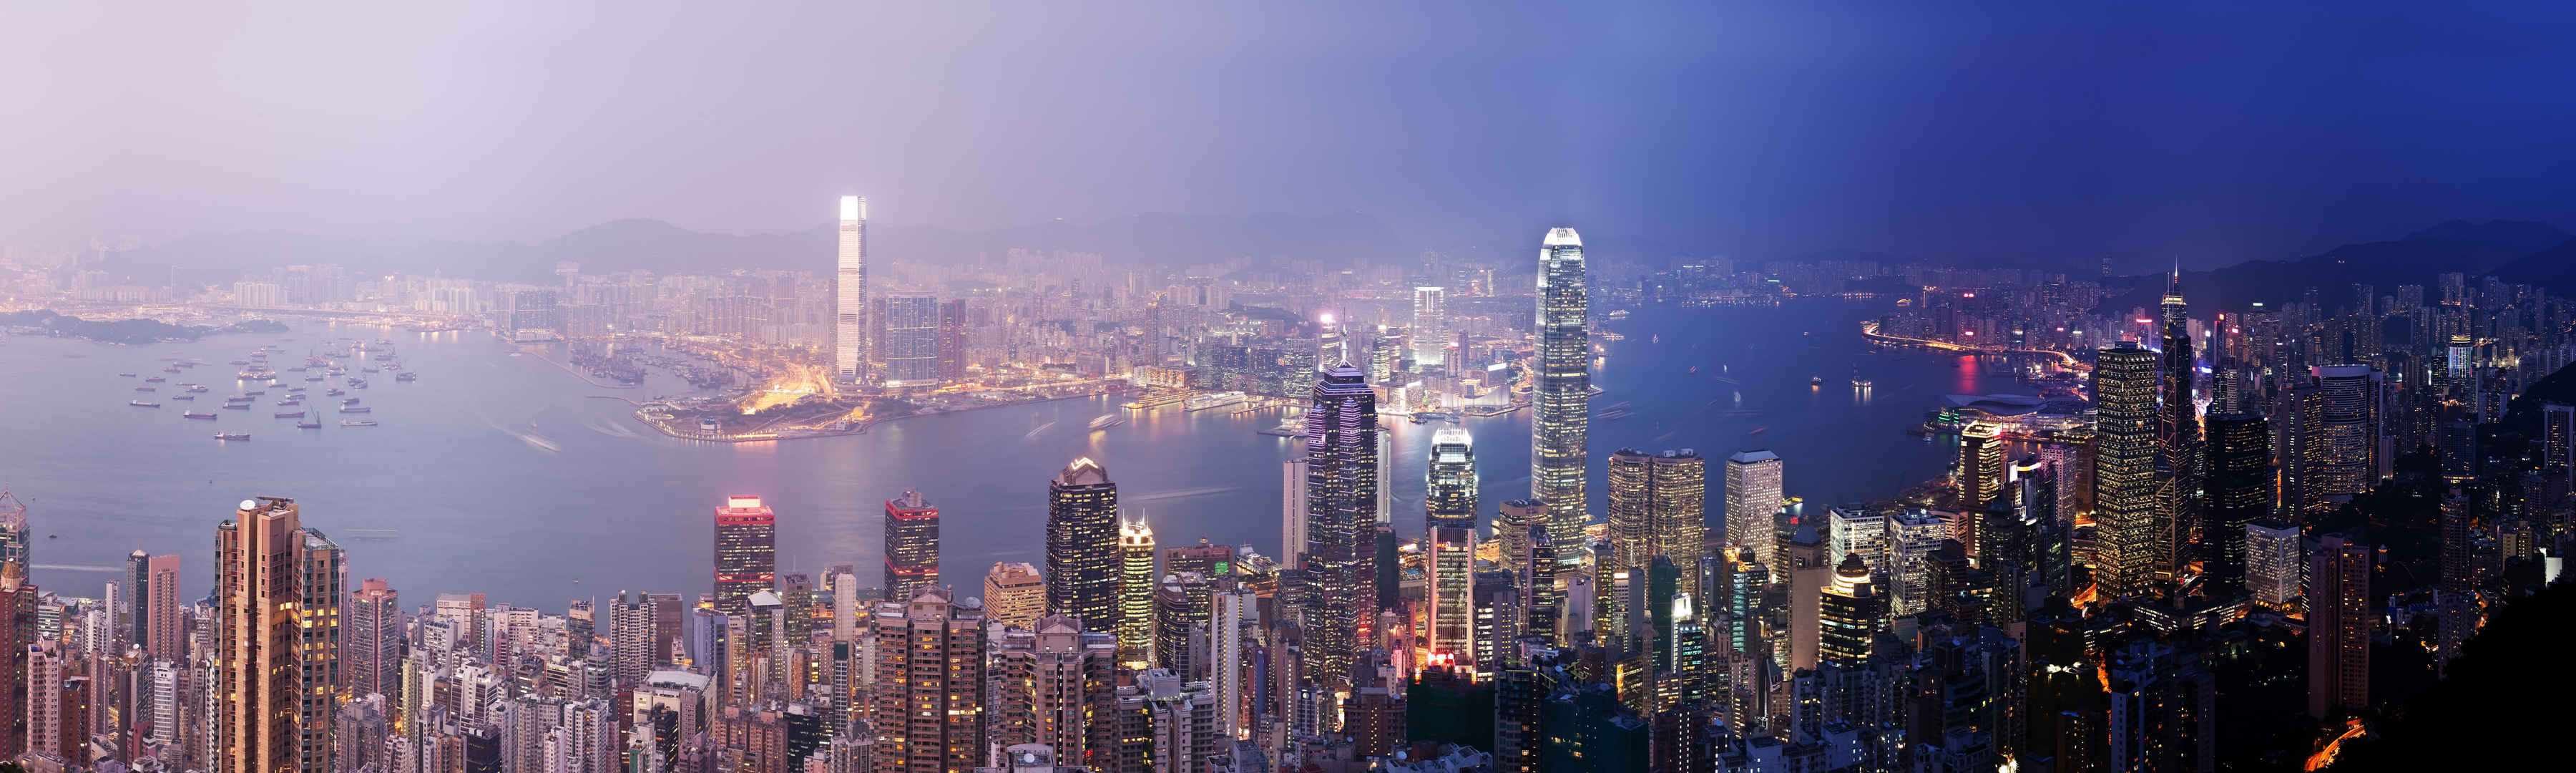 紫色天空香港全景图壁纸-